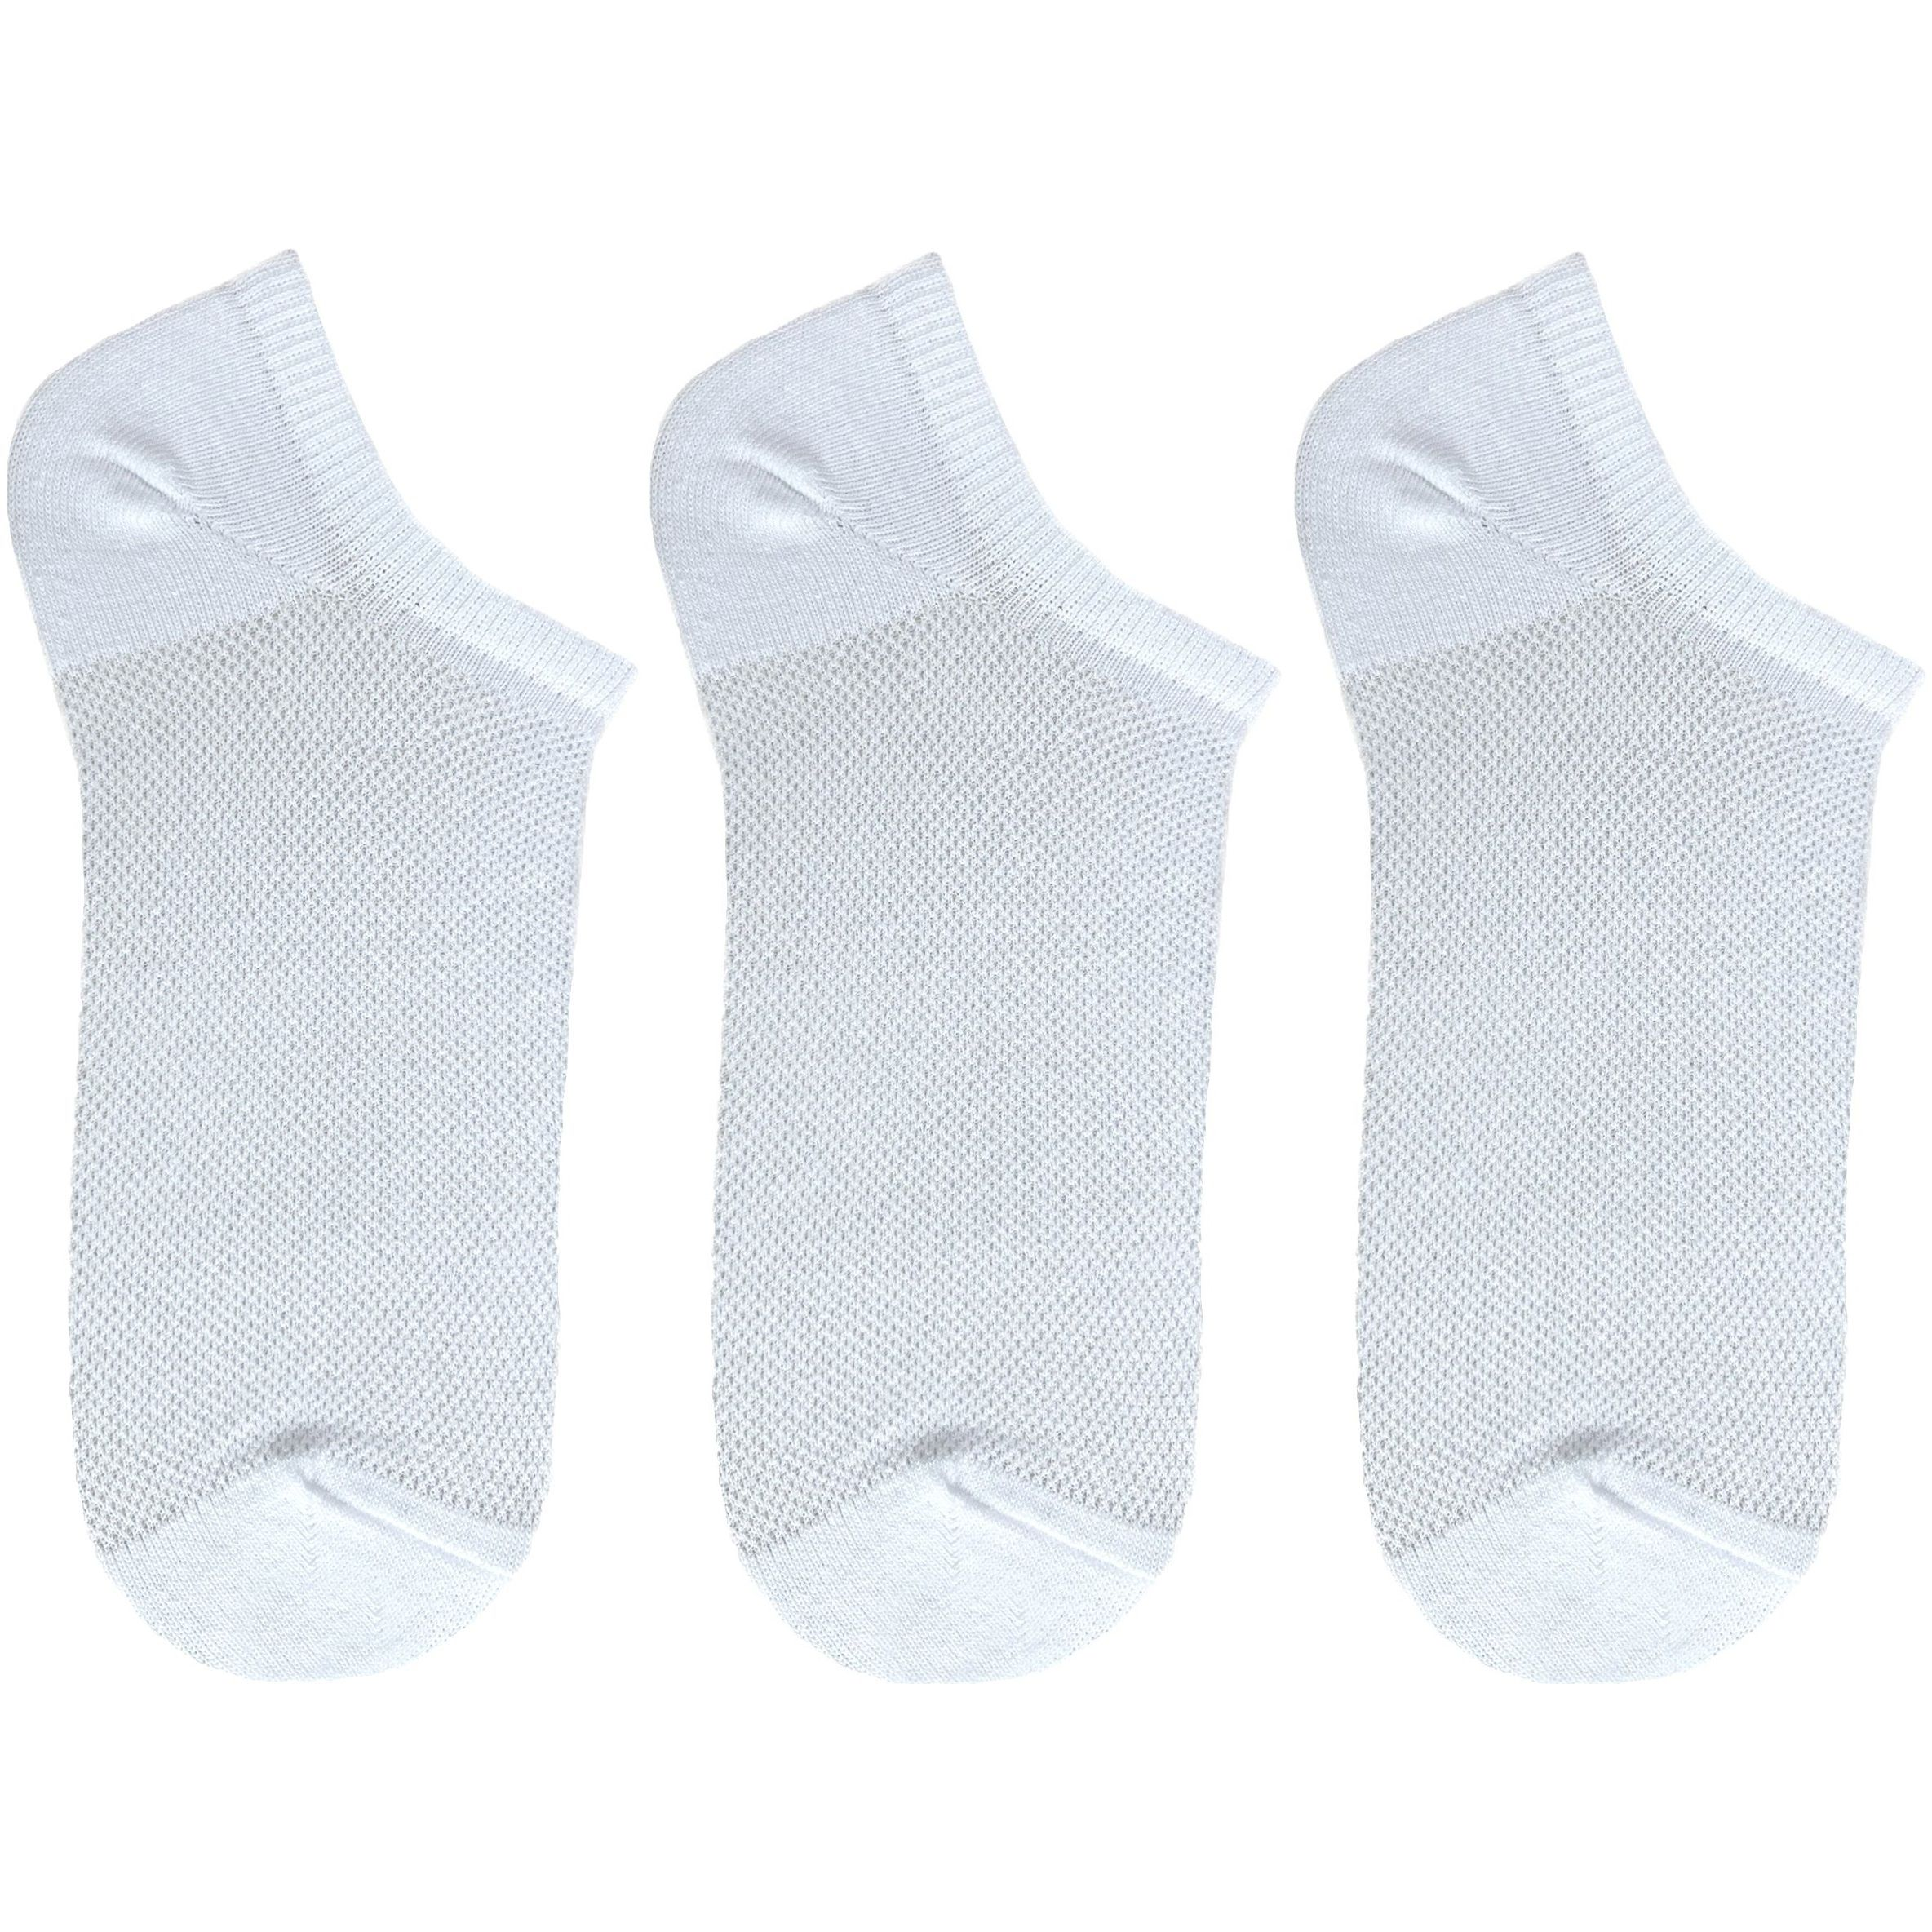 Набір шкарпеток жіночі Premier Socks 36-40 3 пари білі (4820163319391)фото1